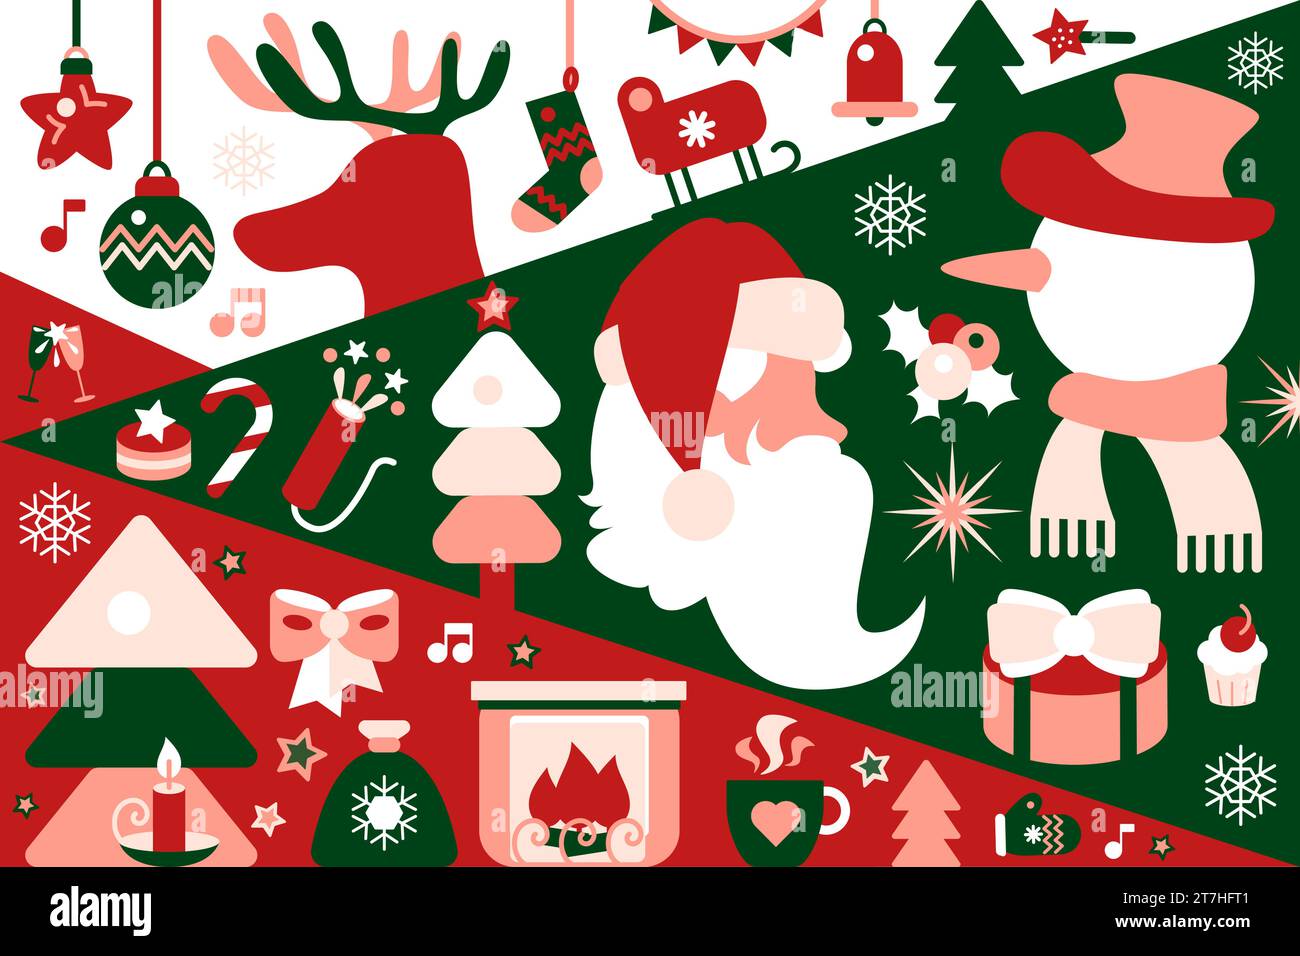 Weihnachtliches horizontales Partyplakat in Rot-Grün-Farben mit Weihnachtsbaumspielzeug, Feuerwerkskörper, Weihnachtsmann, Schneemann, Hirsch, Geschenke, Überraschungen. Te Stock Vektor